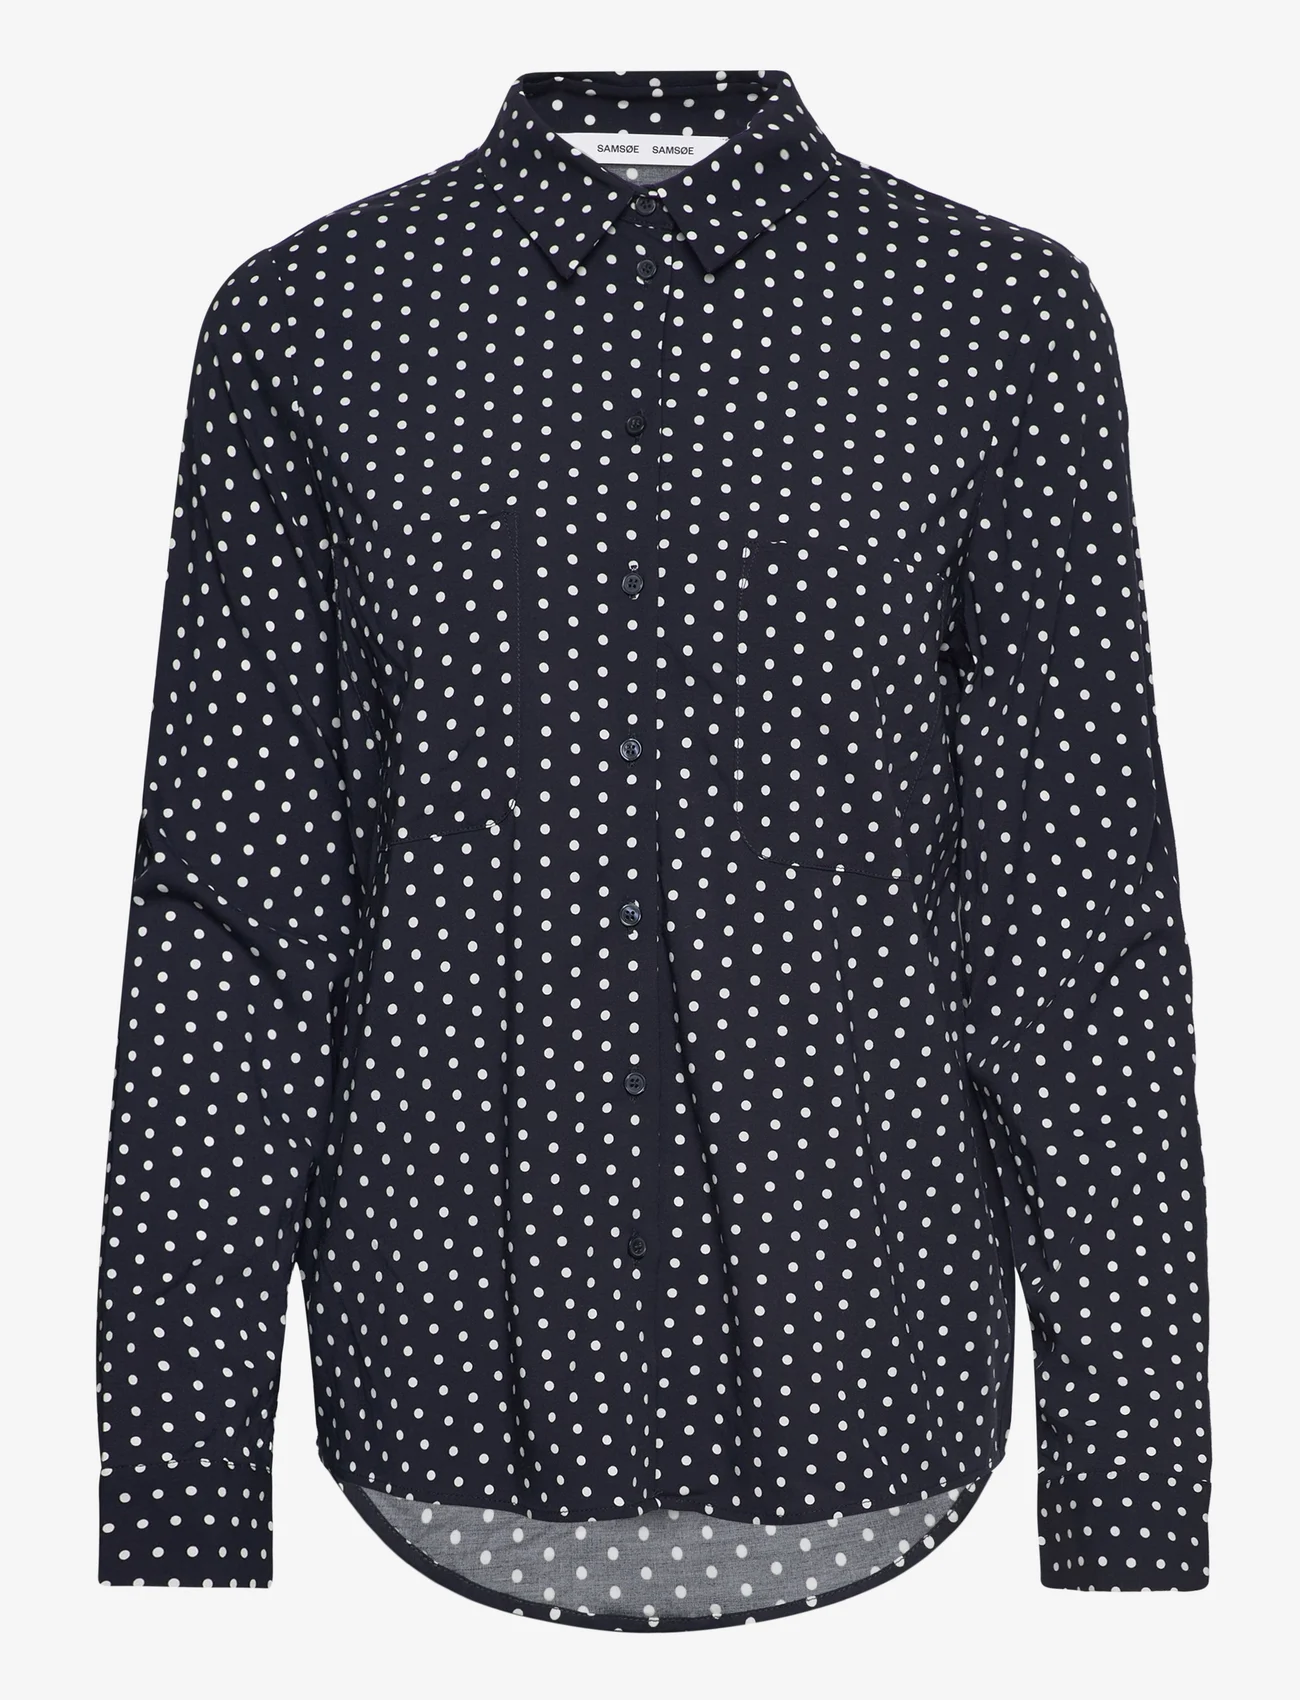 Samsøe Samsøe - Milly shirt aop 9942 - chemises à manches longues - dots - 0